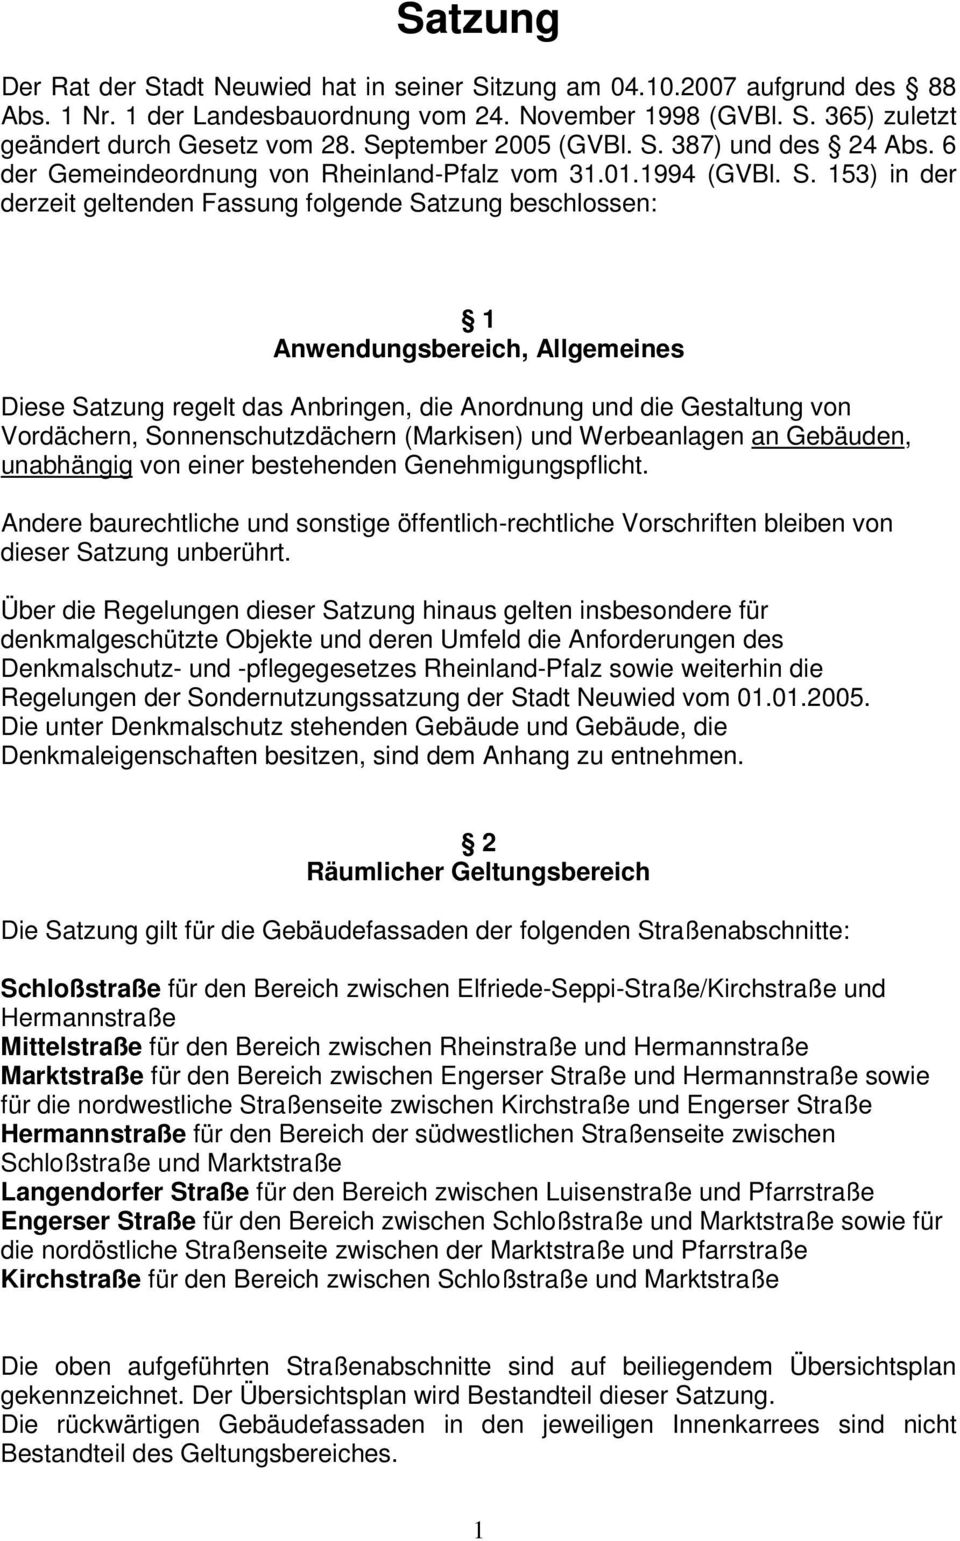 387) und des 24 Abs. 6 der Gemeindeordnung von Rheinland-Pfalz vom 31.01.1994 (GVBl. S.